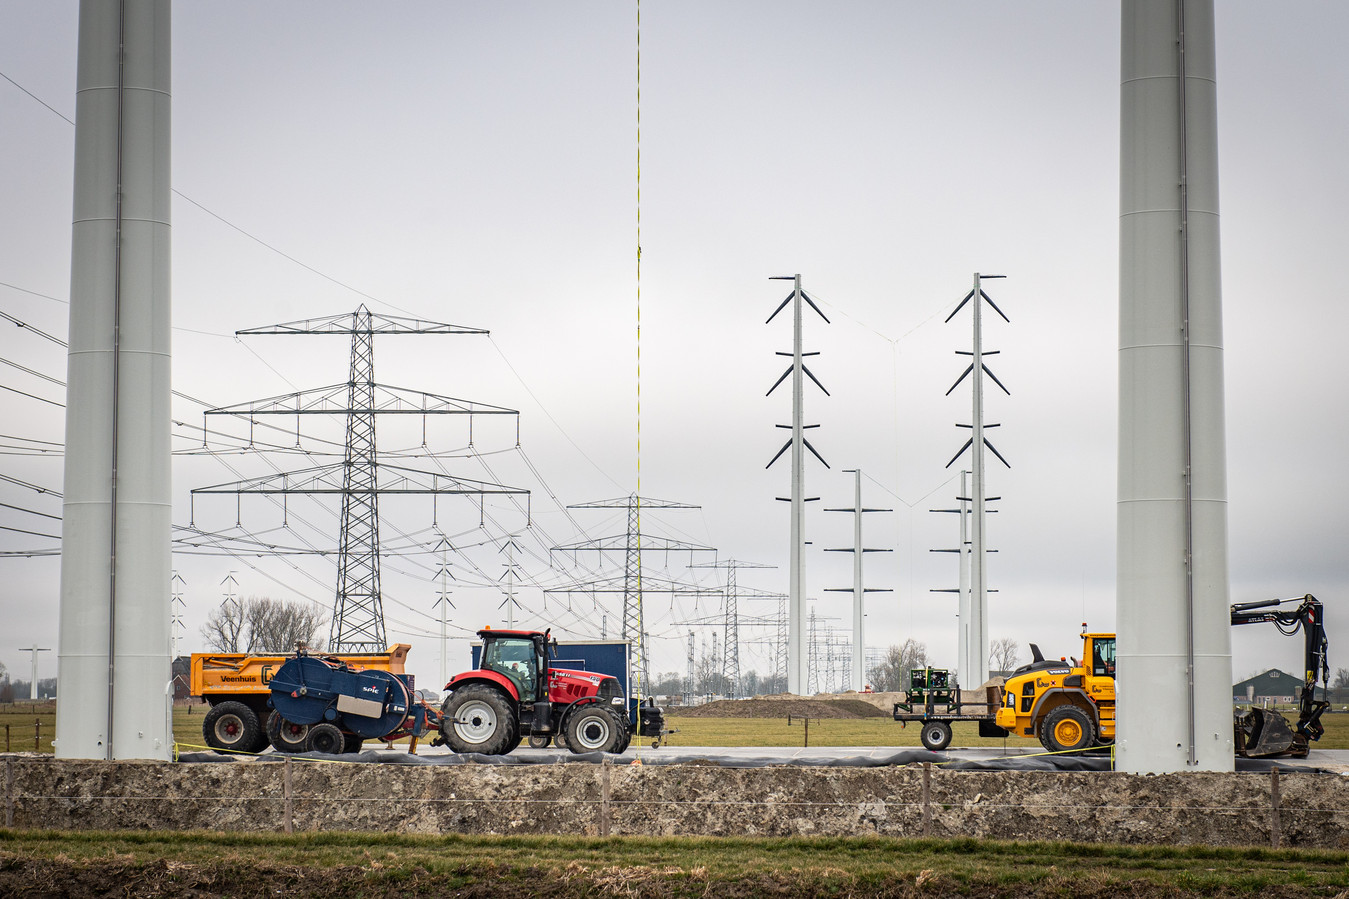 In Groningen worden de oude vakwerkmasten (links) vervangen door ranke wintracks (rechts). In West-Brabant komen geen wintracks maar nieuwe vakwerkmasten te staan voor de 380 kV-verbinding.